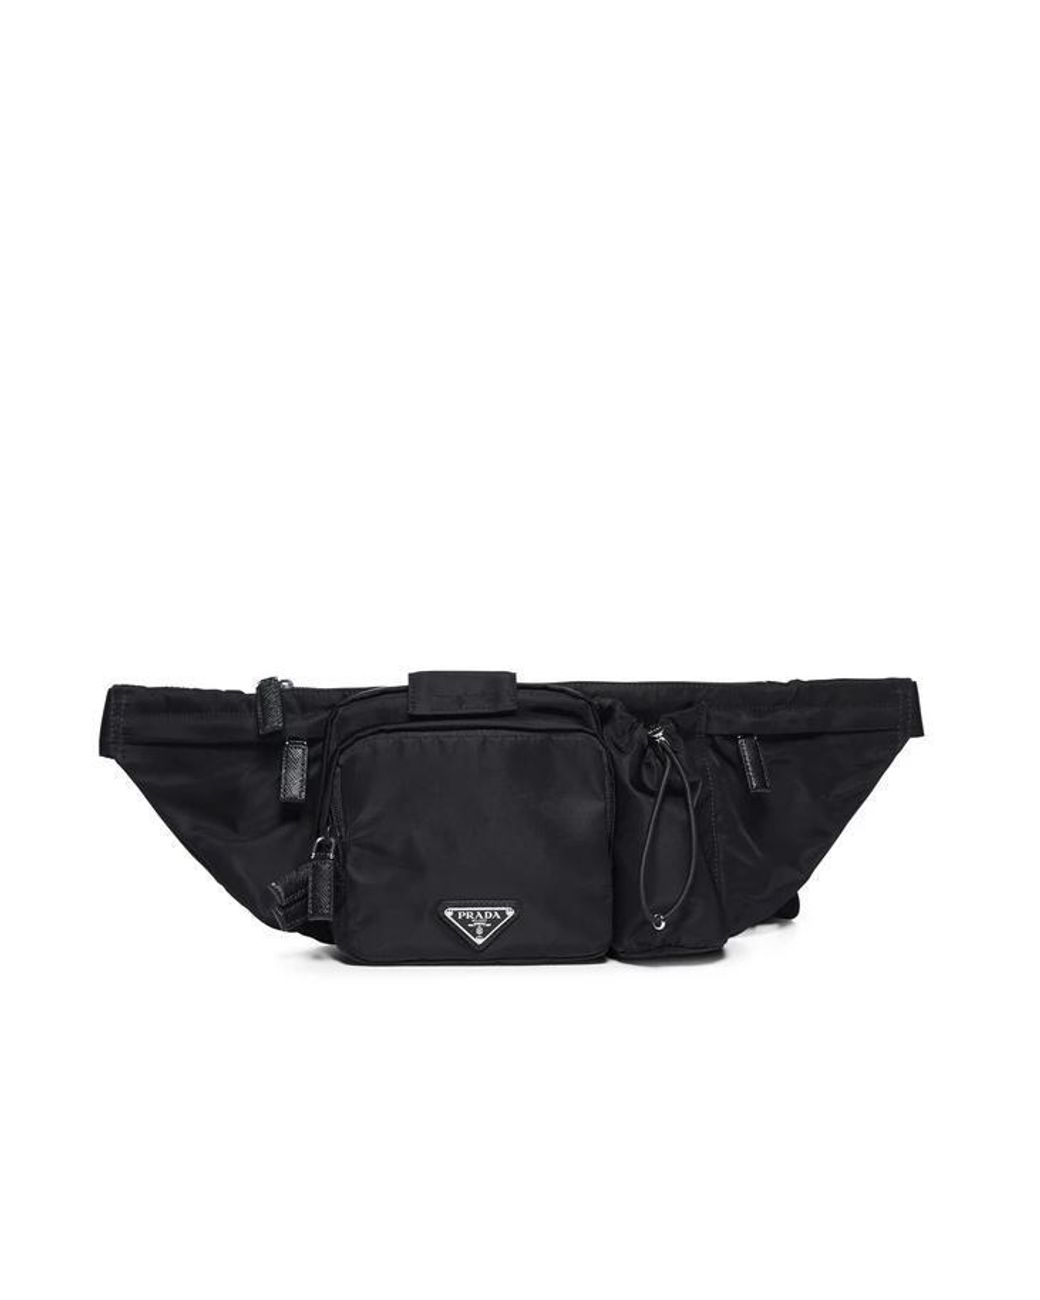 Prada Unisex Black Nylon Belt Bag/ Fanny Pack